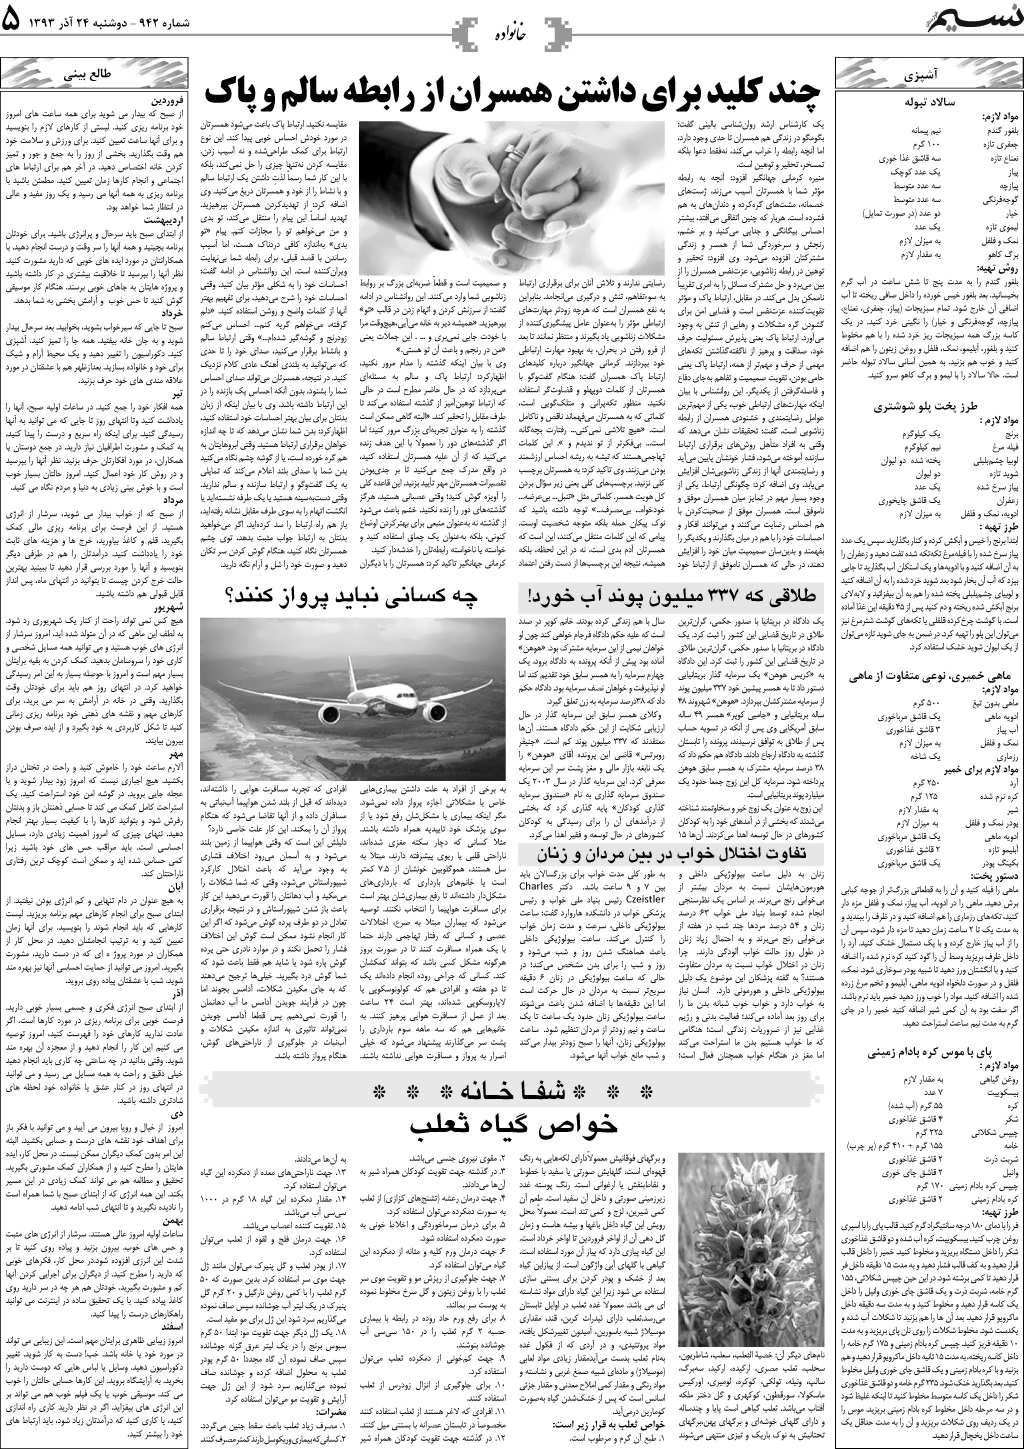 صفحه خانواده روزنامه نسیم شماره 942